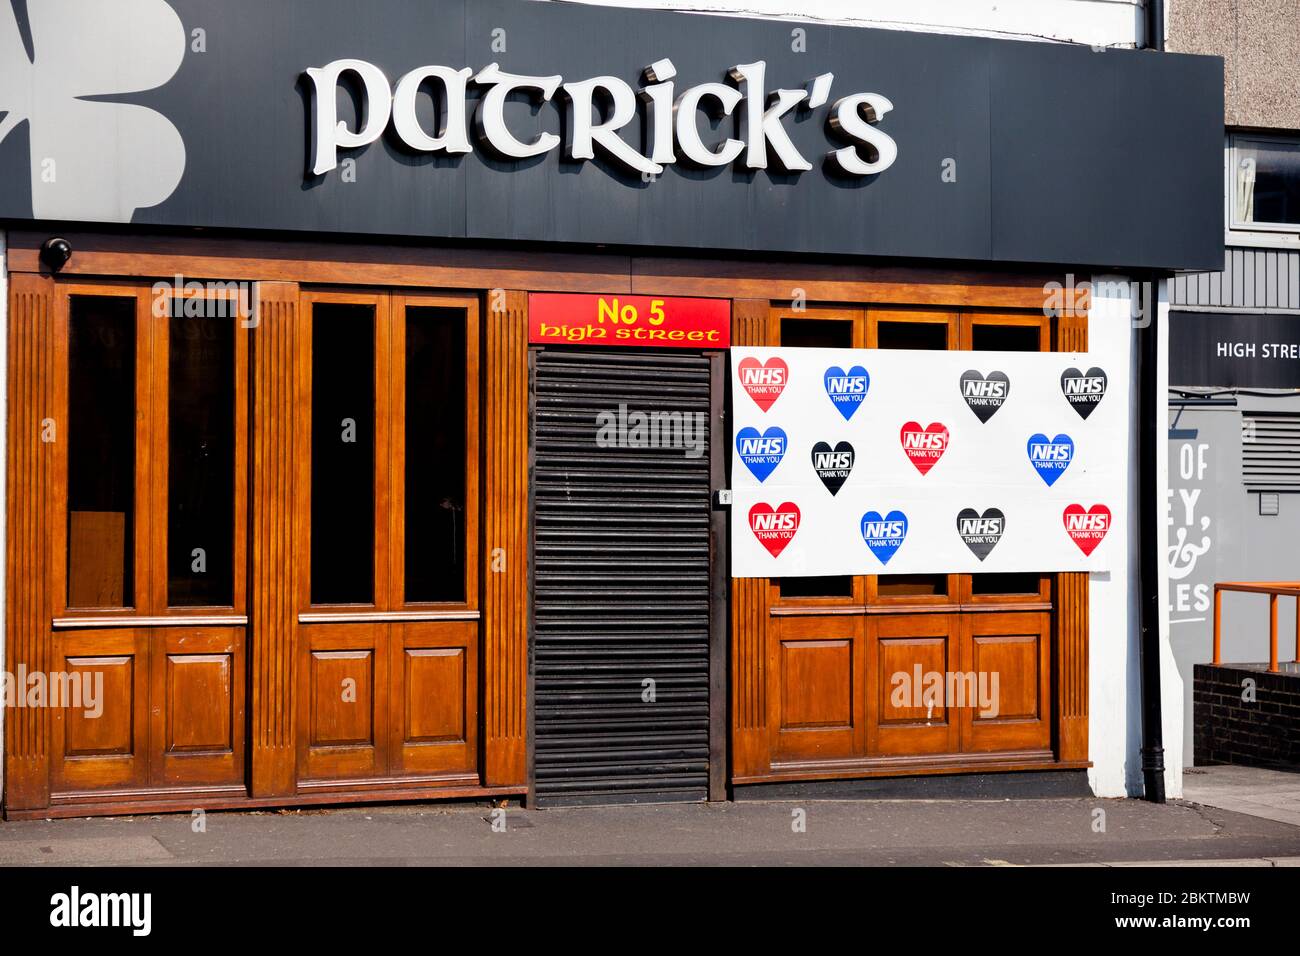 Patrick's Bar, High Street, Beckenham, Londra, Regno Unito. Bloccato durante l'epidemia di covid-19, con segno di sostegno NHS. Foto Stock